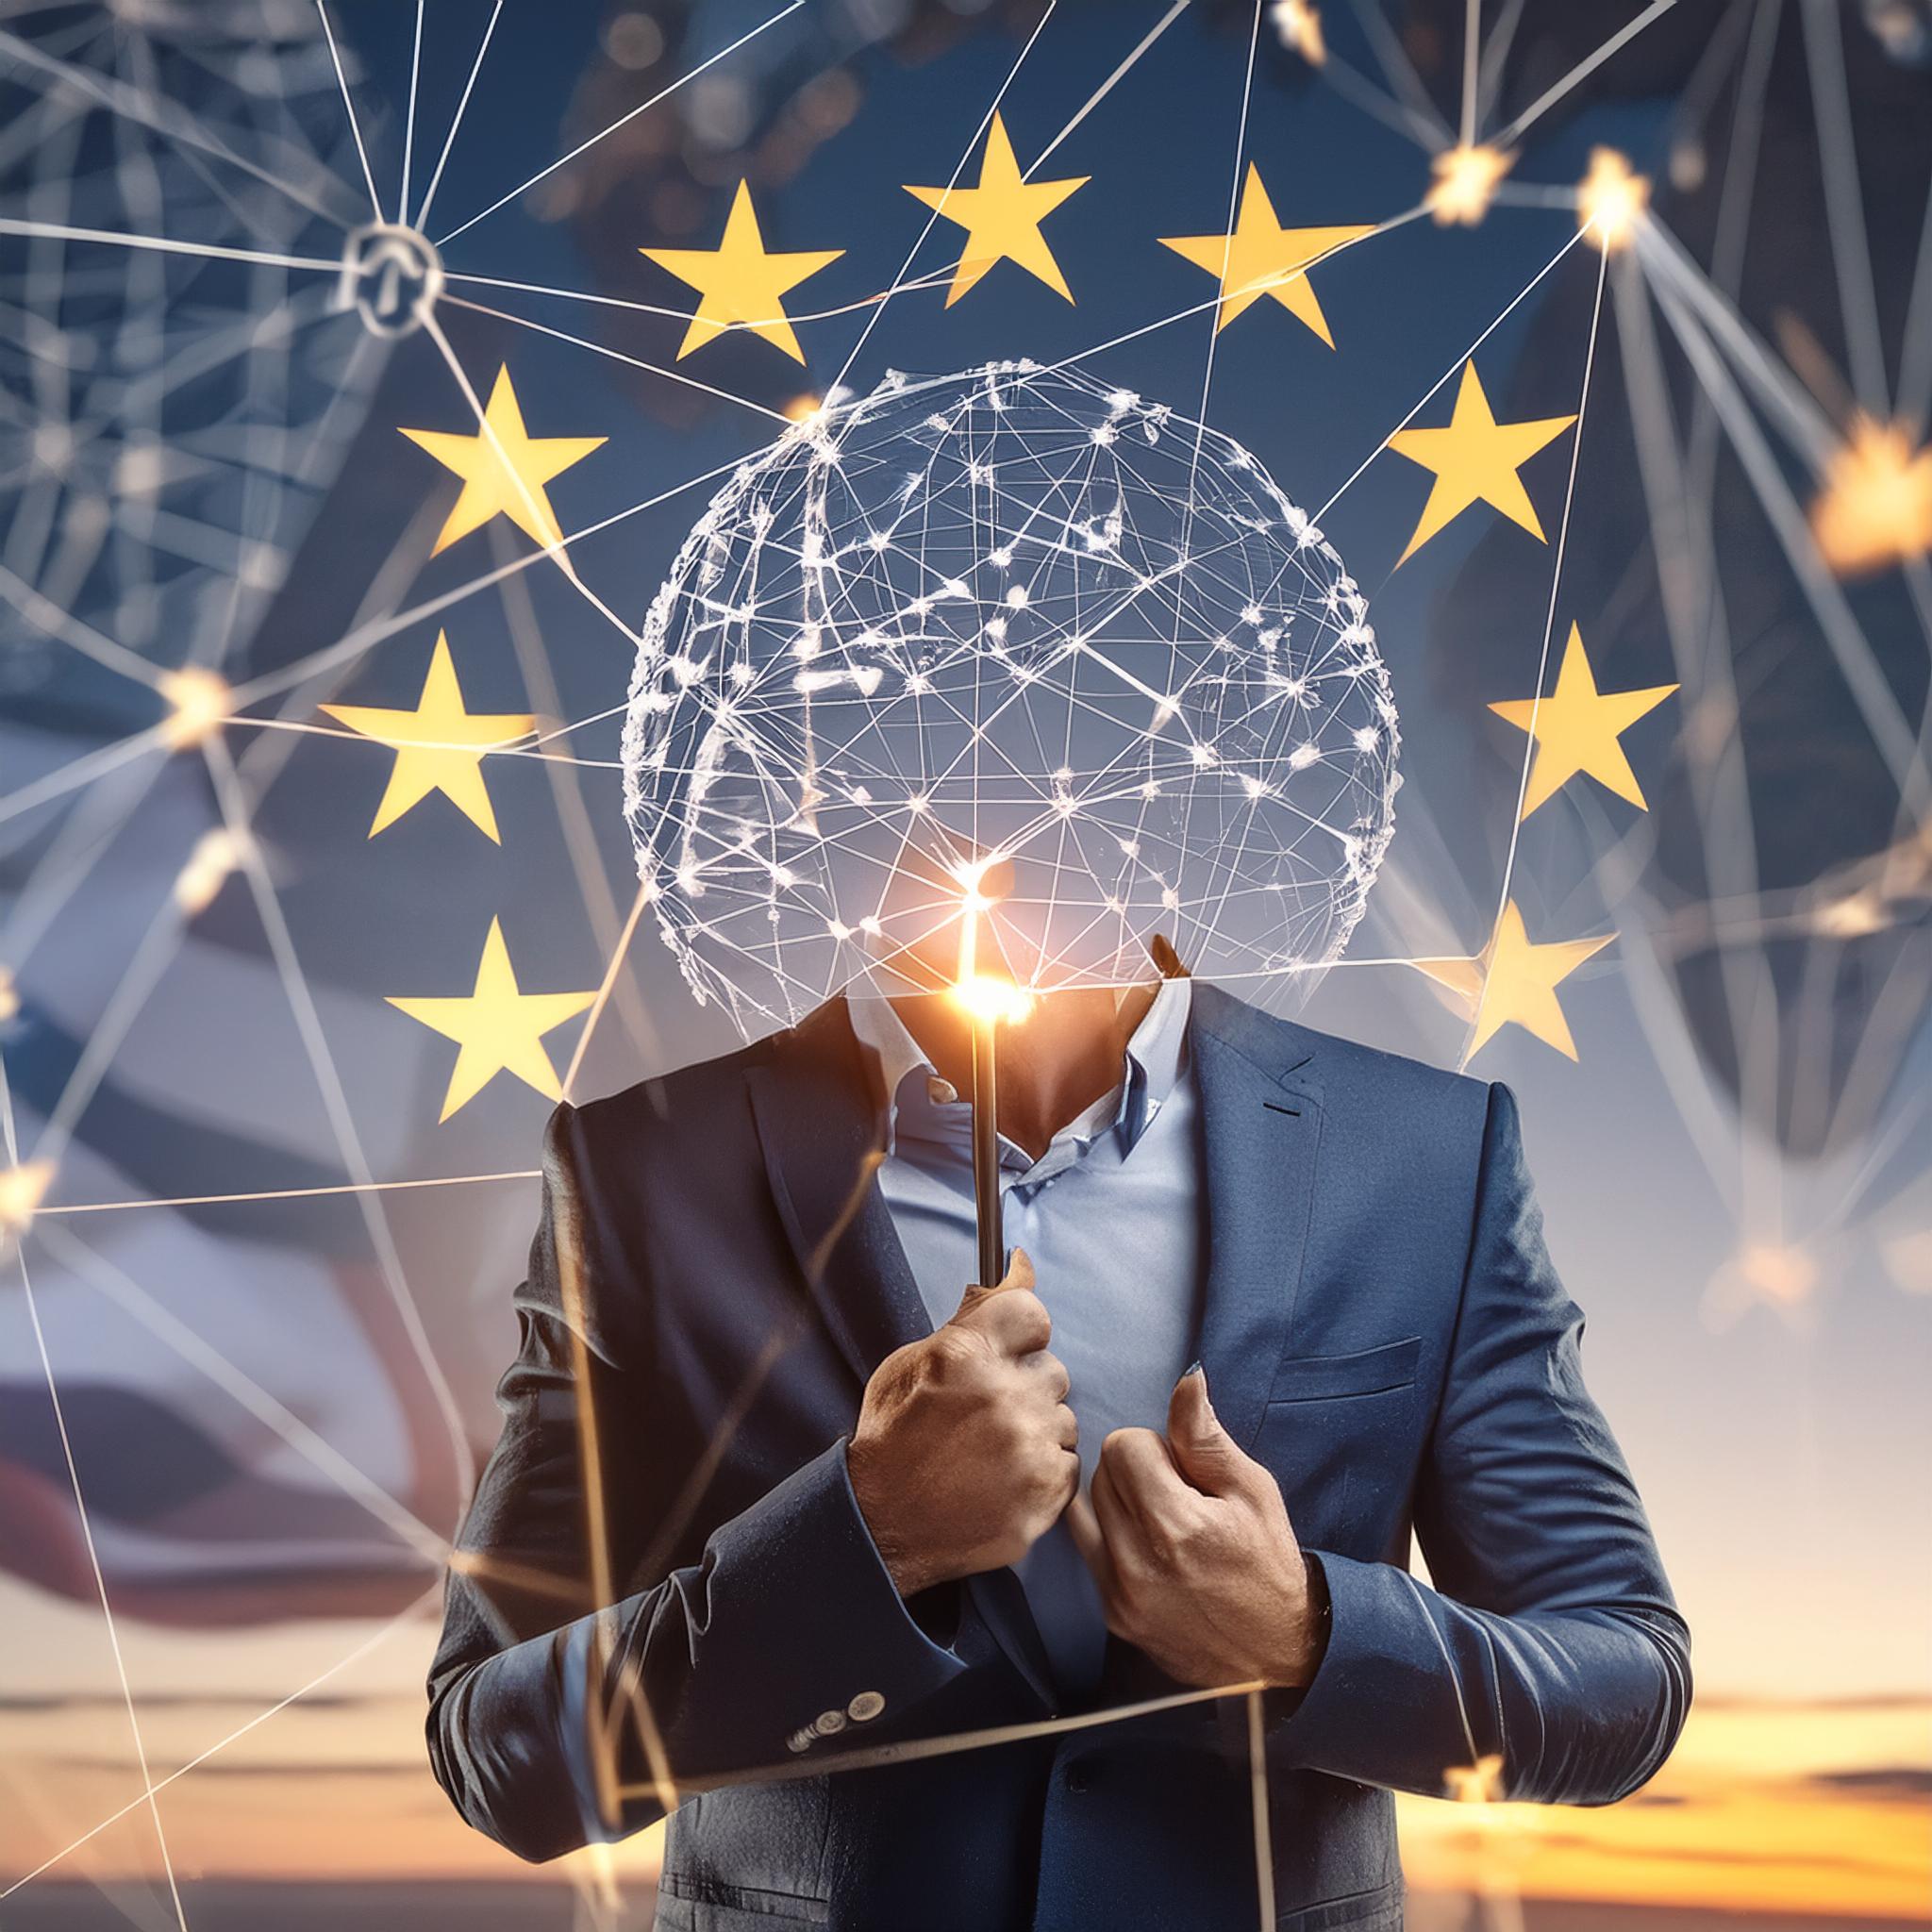 Publicado o Regulamento Inteligência Artificial no Jornal Oficial da União Europeia